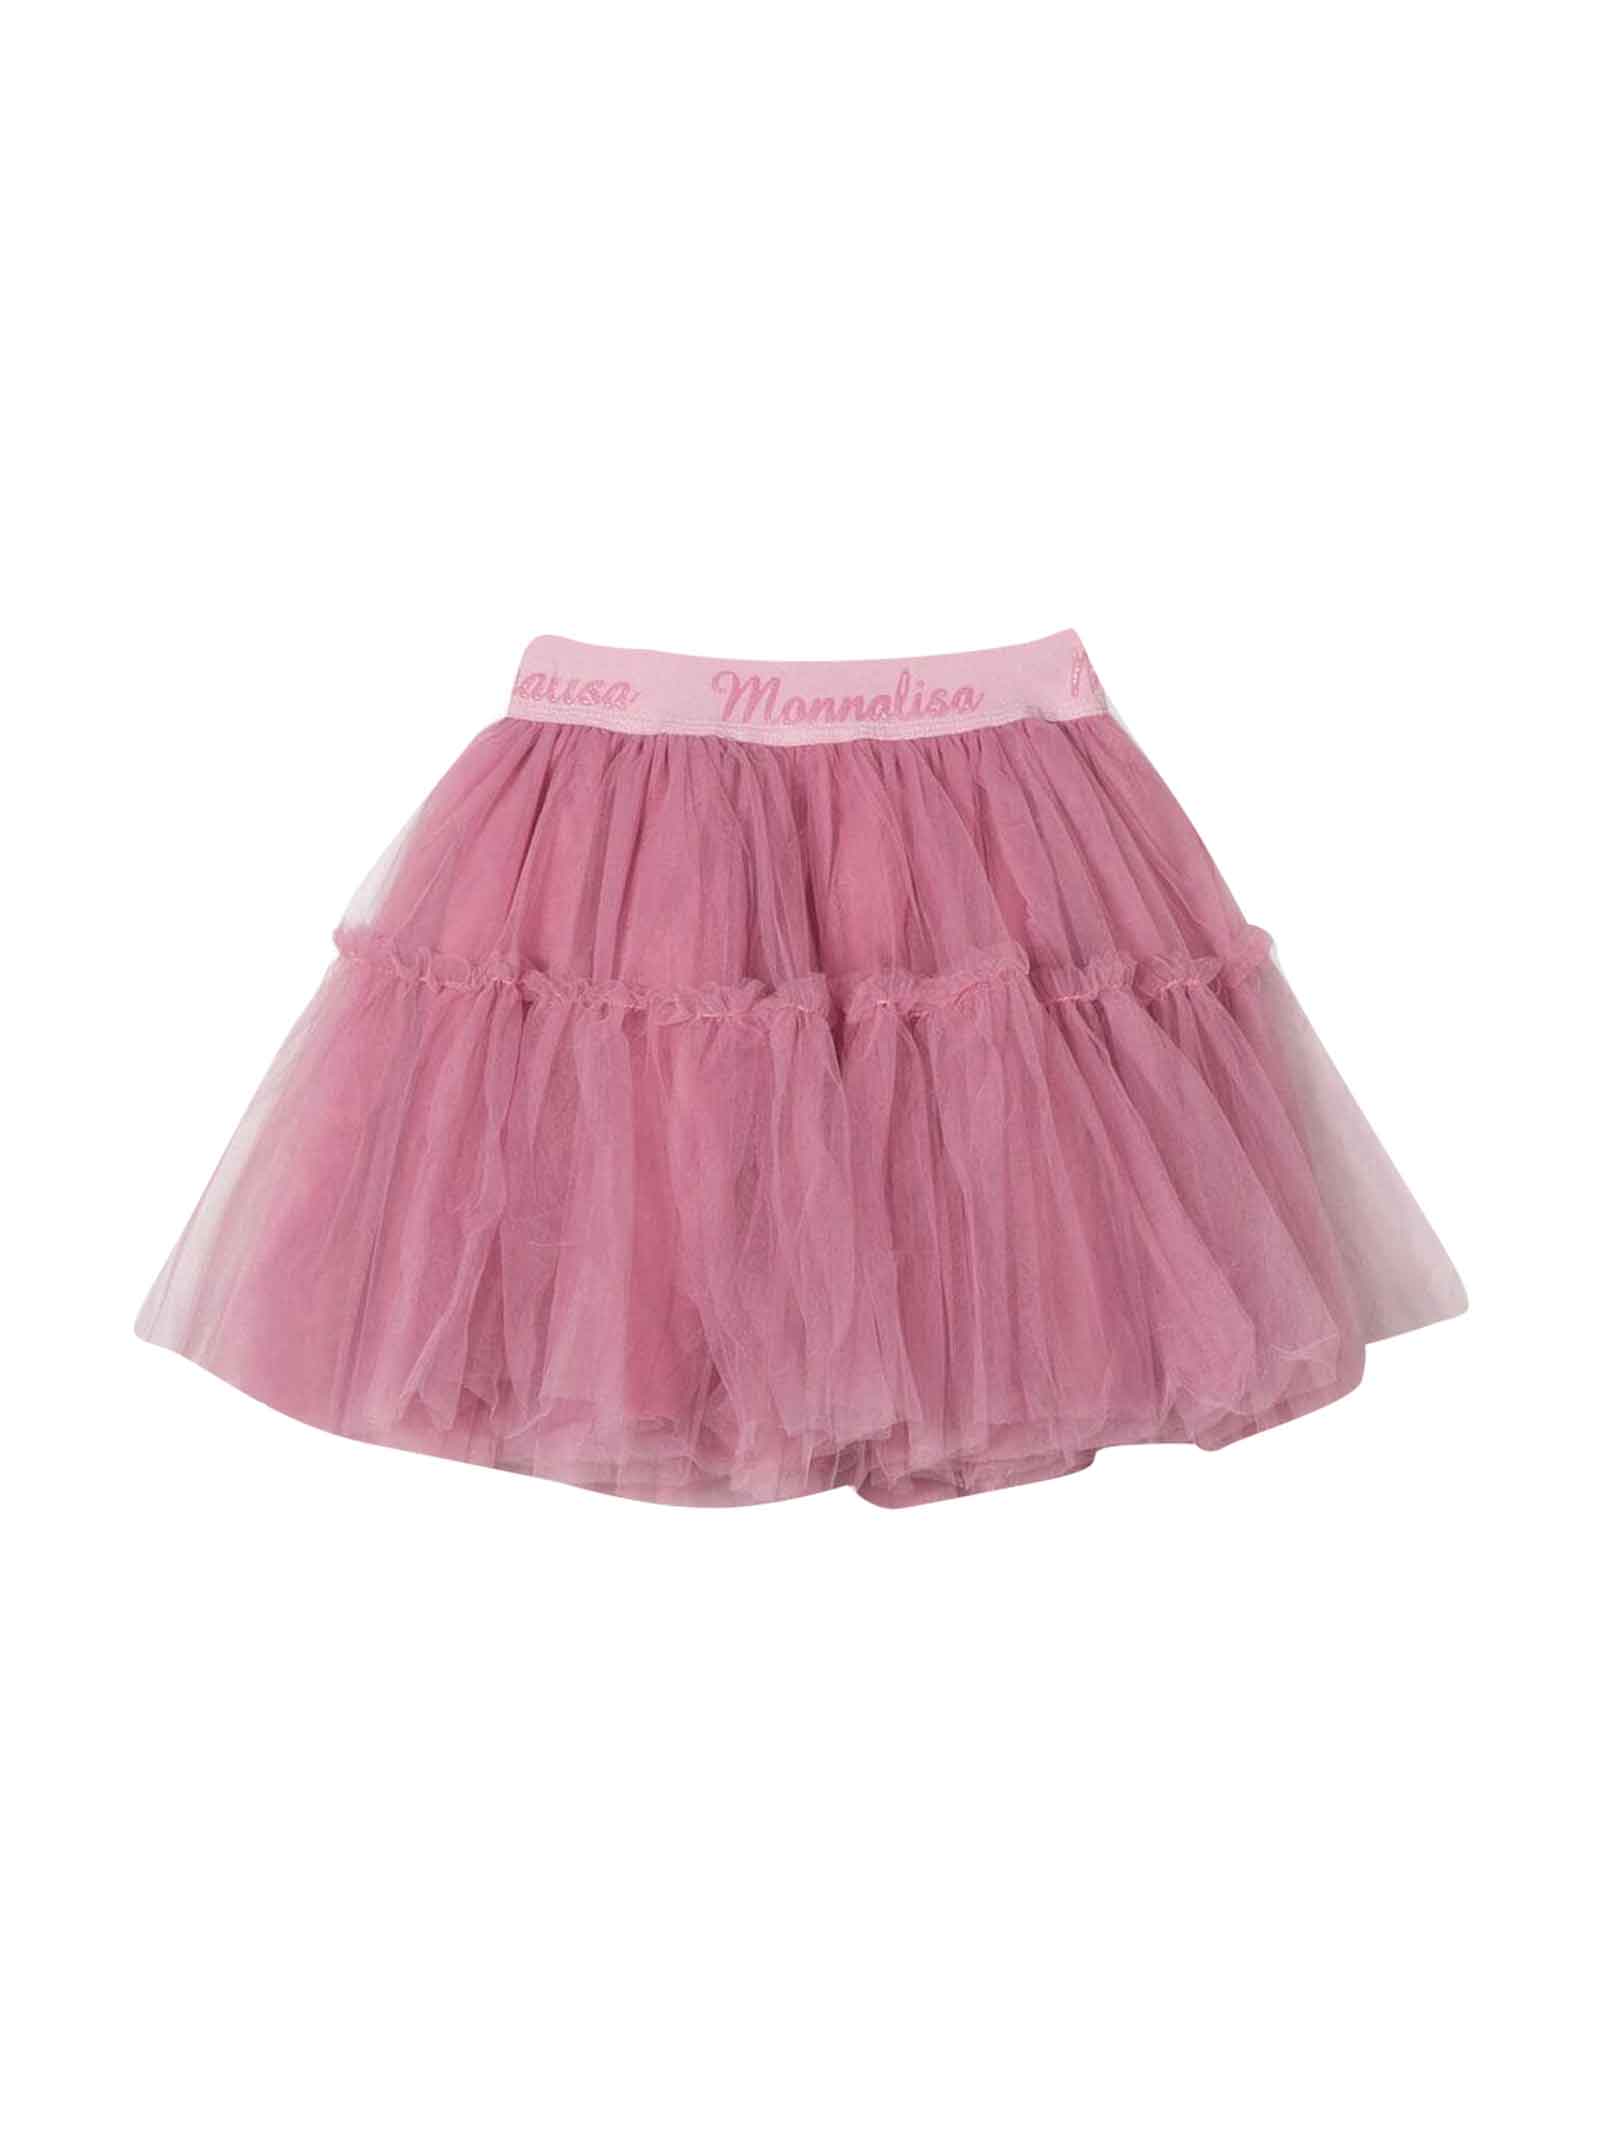 Monnalisa Powder Pink Skirt Girl